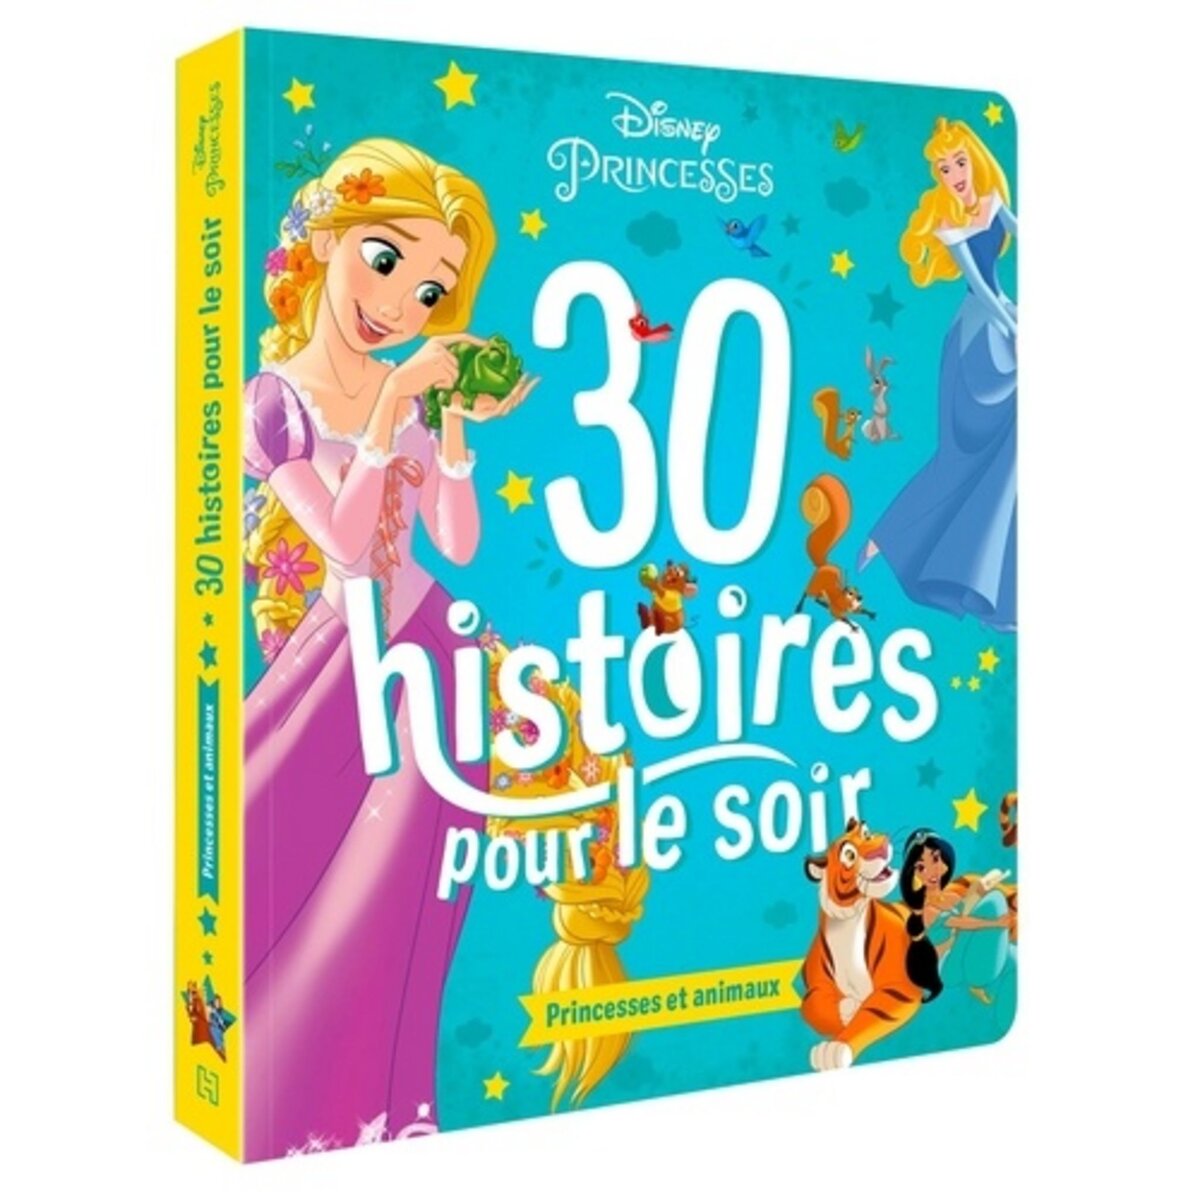  30 HISTOIRES POUR LE SOIR. PRINCESSES ET ANIMAUX, Disney